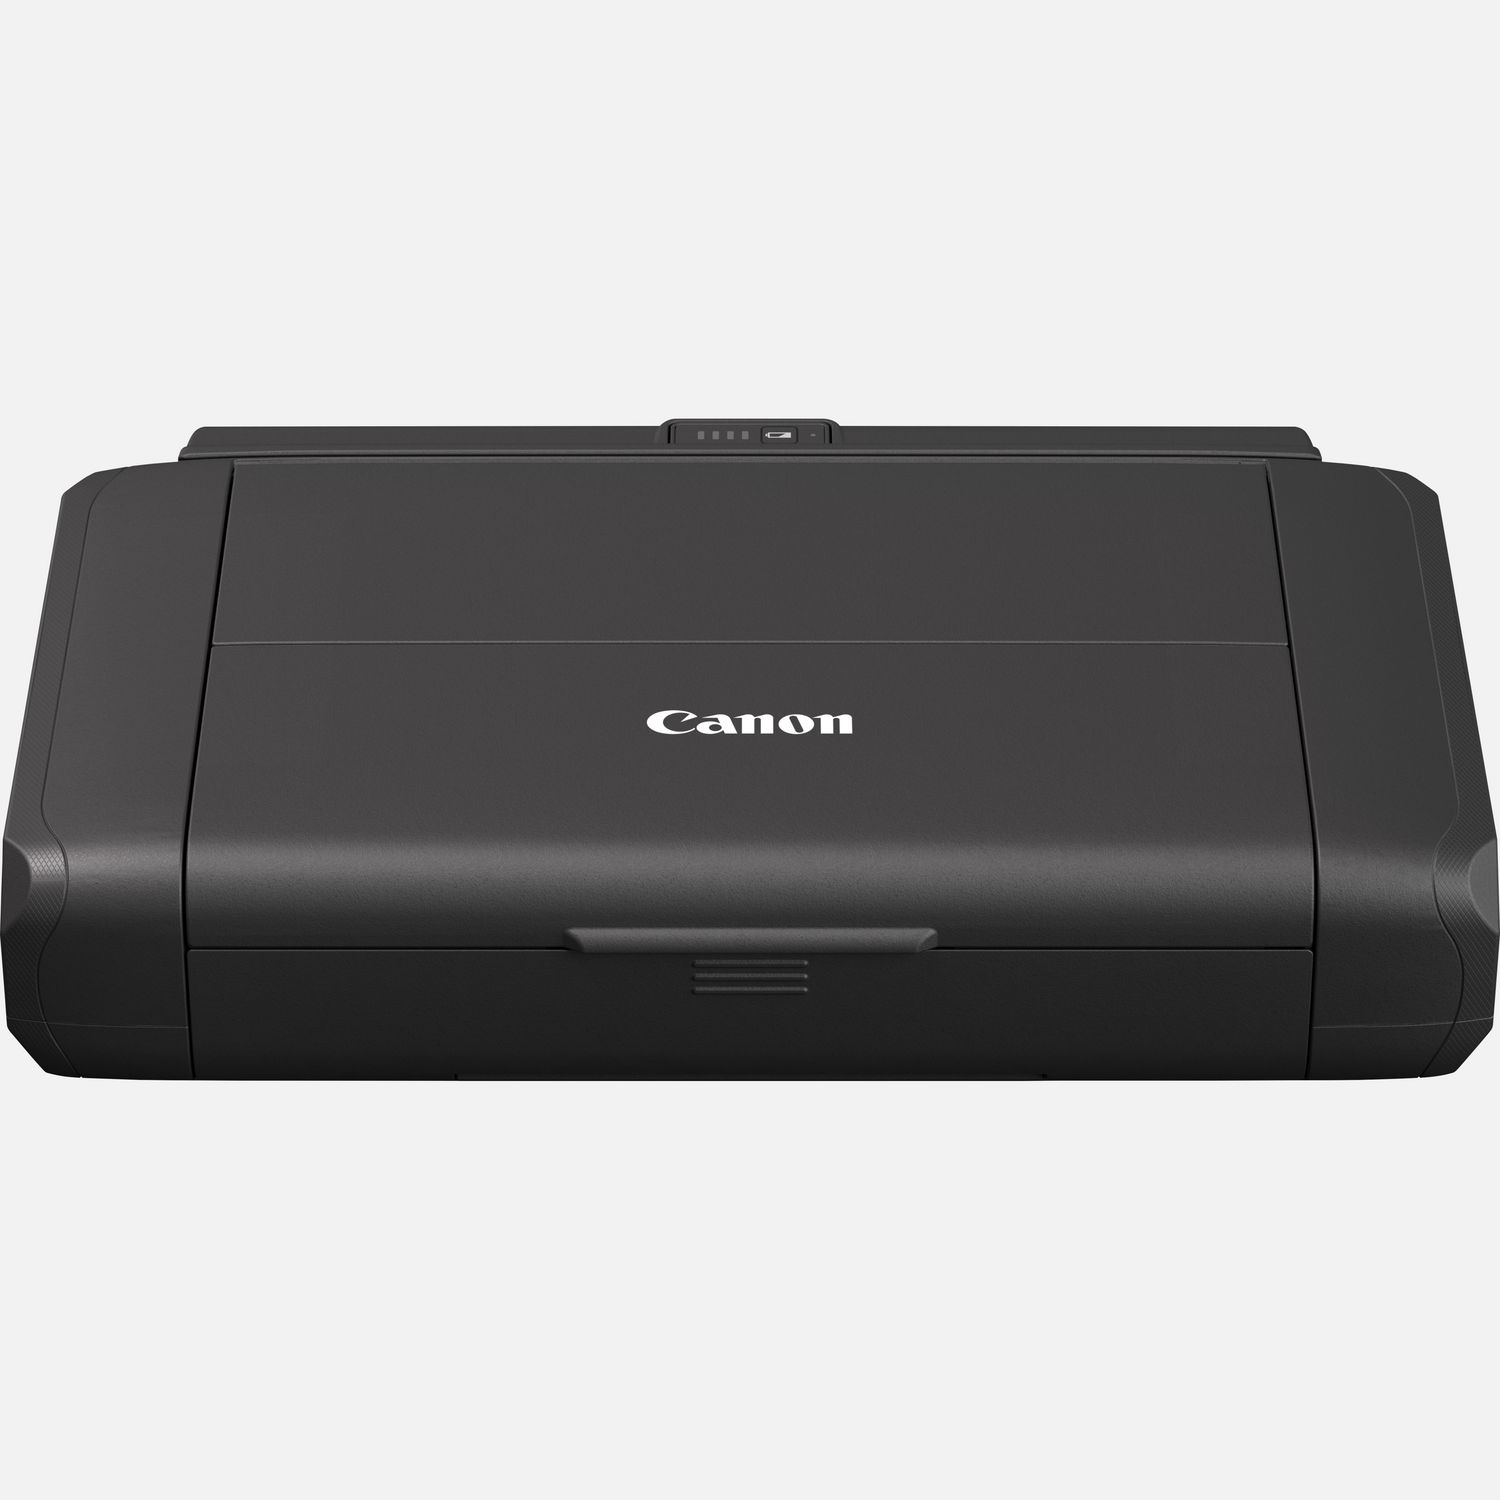 Компакт принтер. Canon PIXMA tr150. Принтер струйный Canon PIXMA tr150. PIXMA tr150 with Battery. Canon портативный принтер a4.